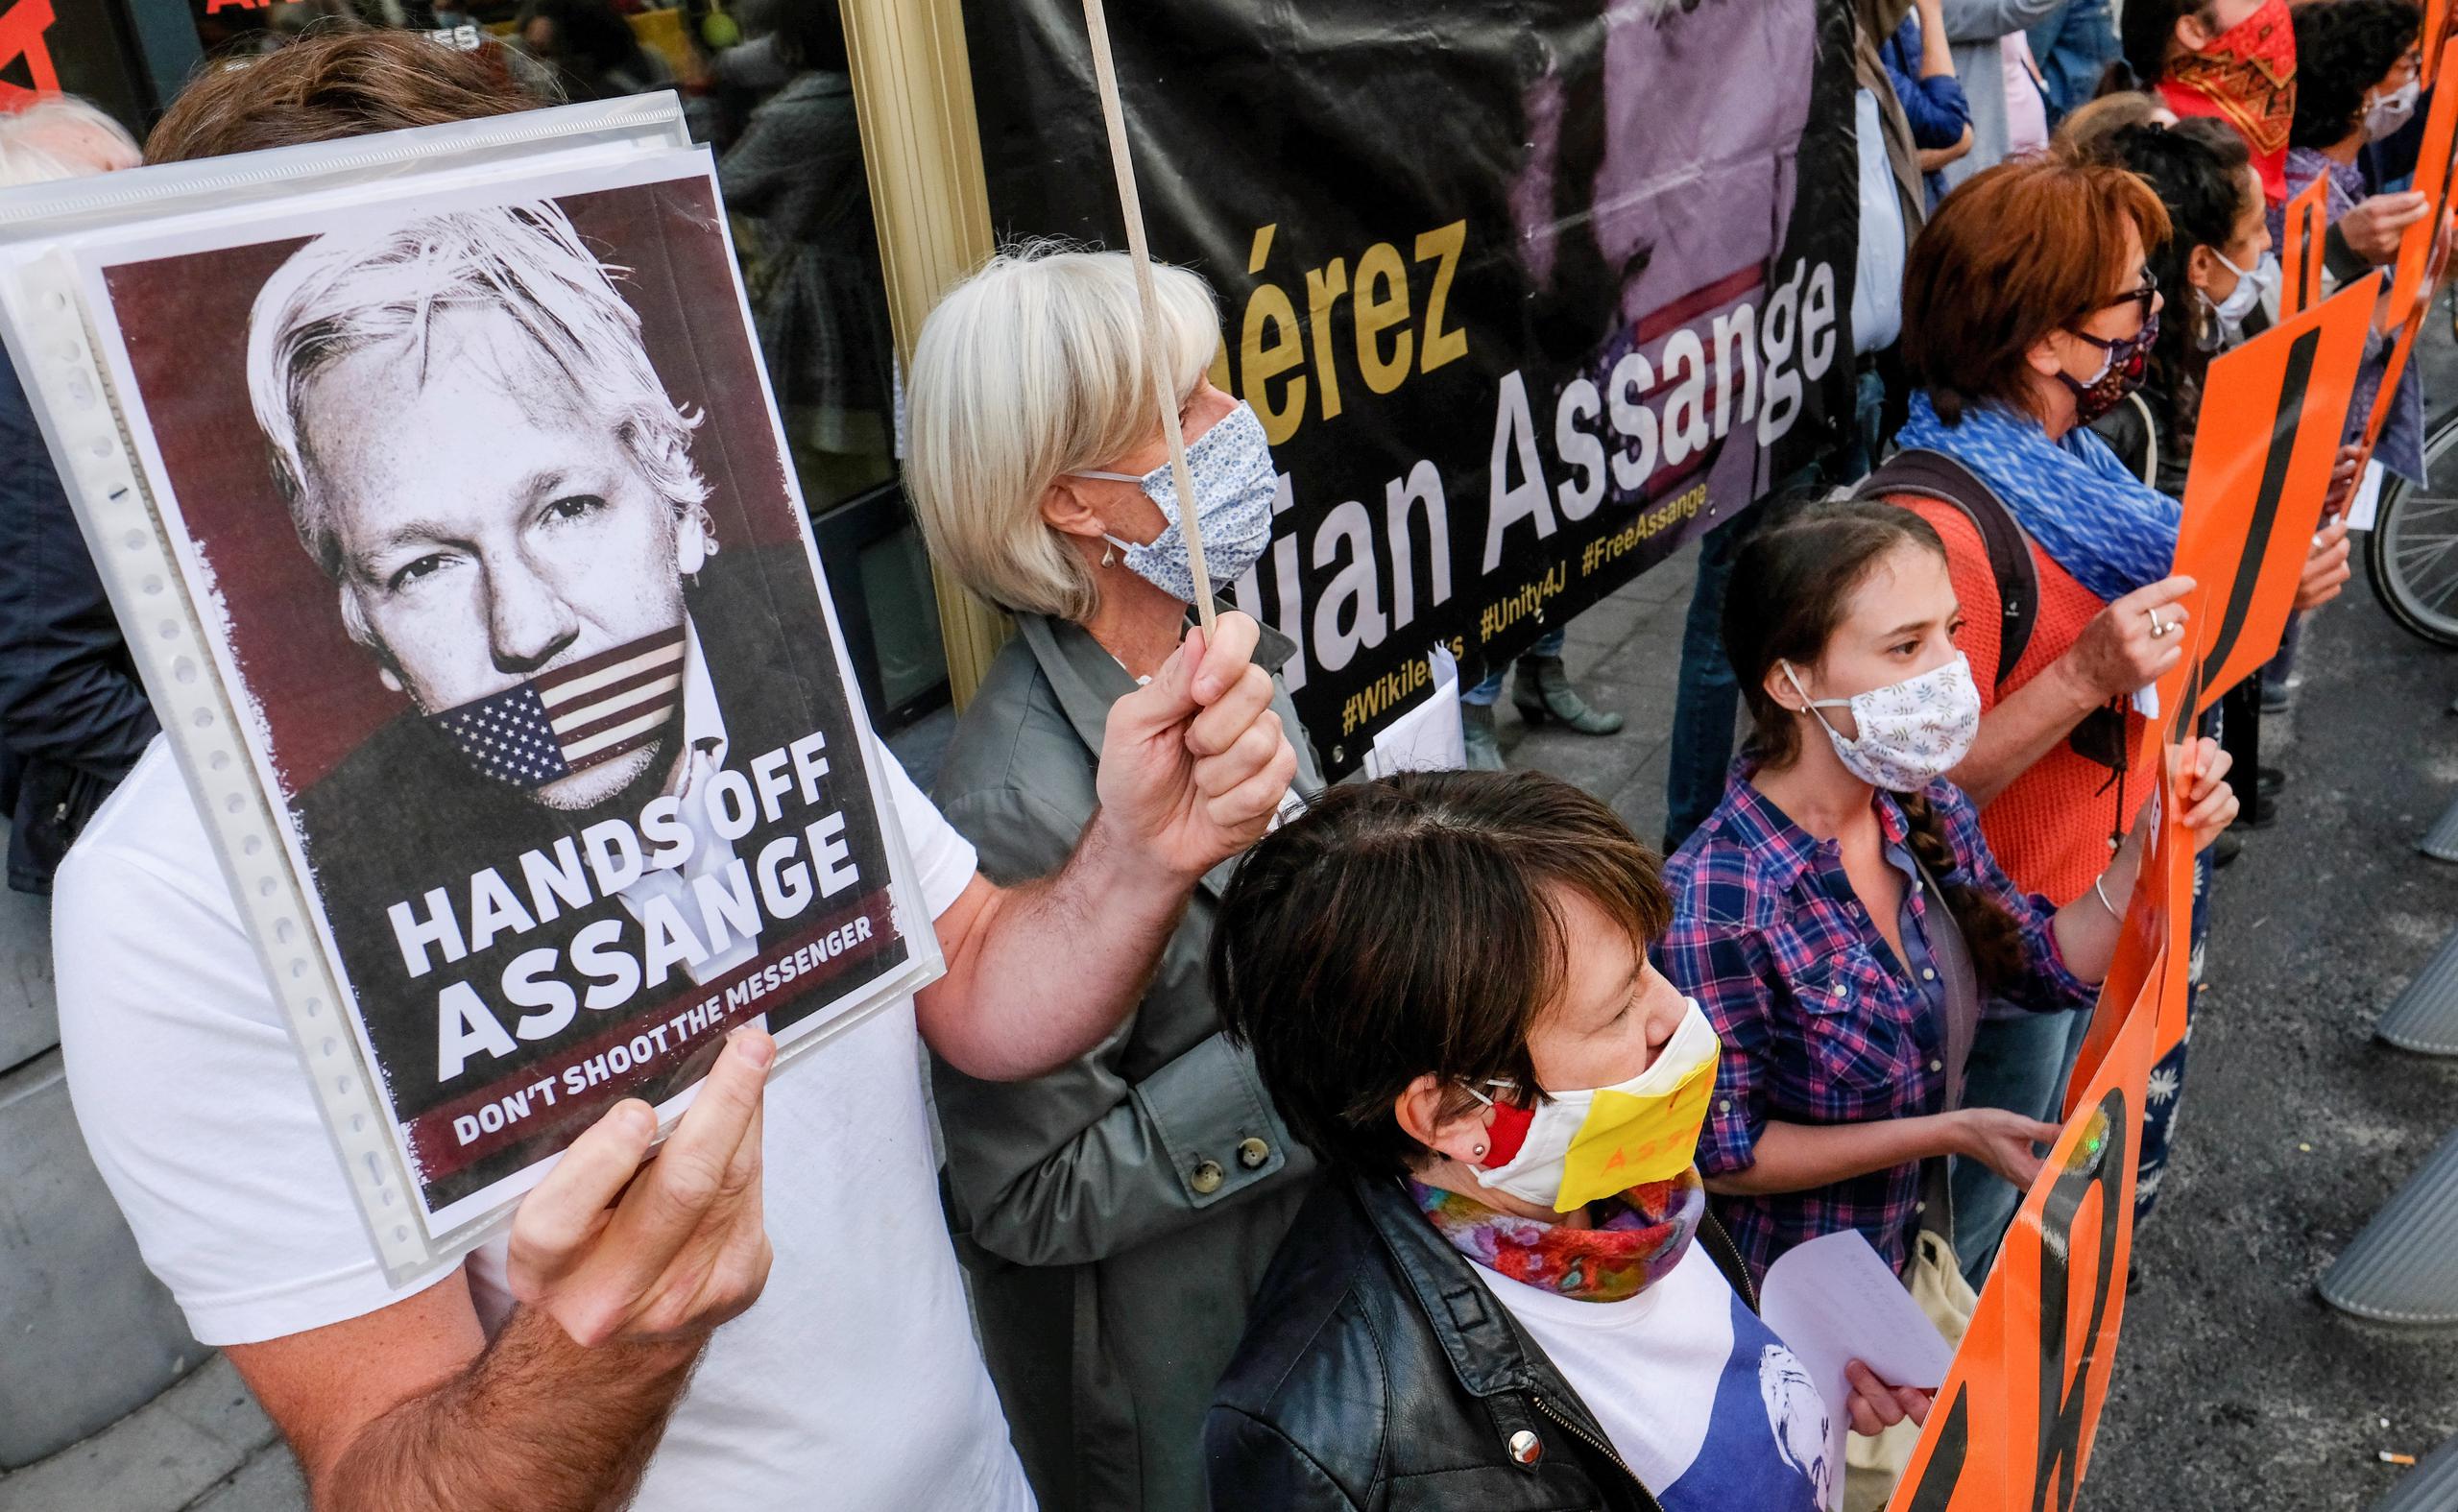 El Supremo ha rechazado hoy la petición de Assange con el argumento de que no plantea “ningún punto legal debatible”, lo que significa que sigue vigente el fallo del Superior y la deportación puede ejecutarse si eventualmente así lo ratifica la ministra.